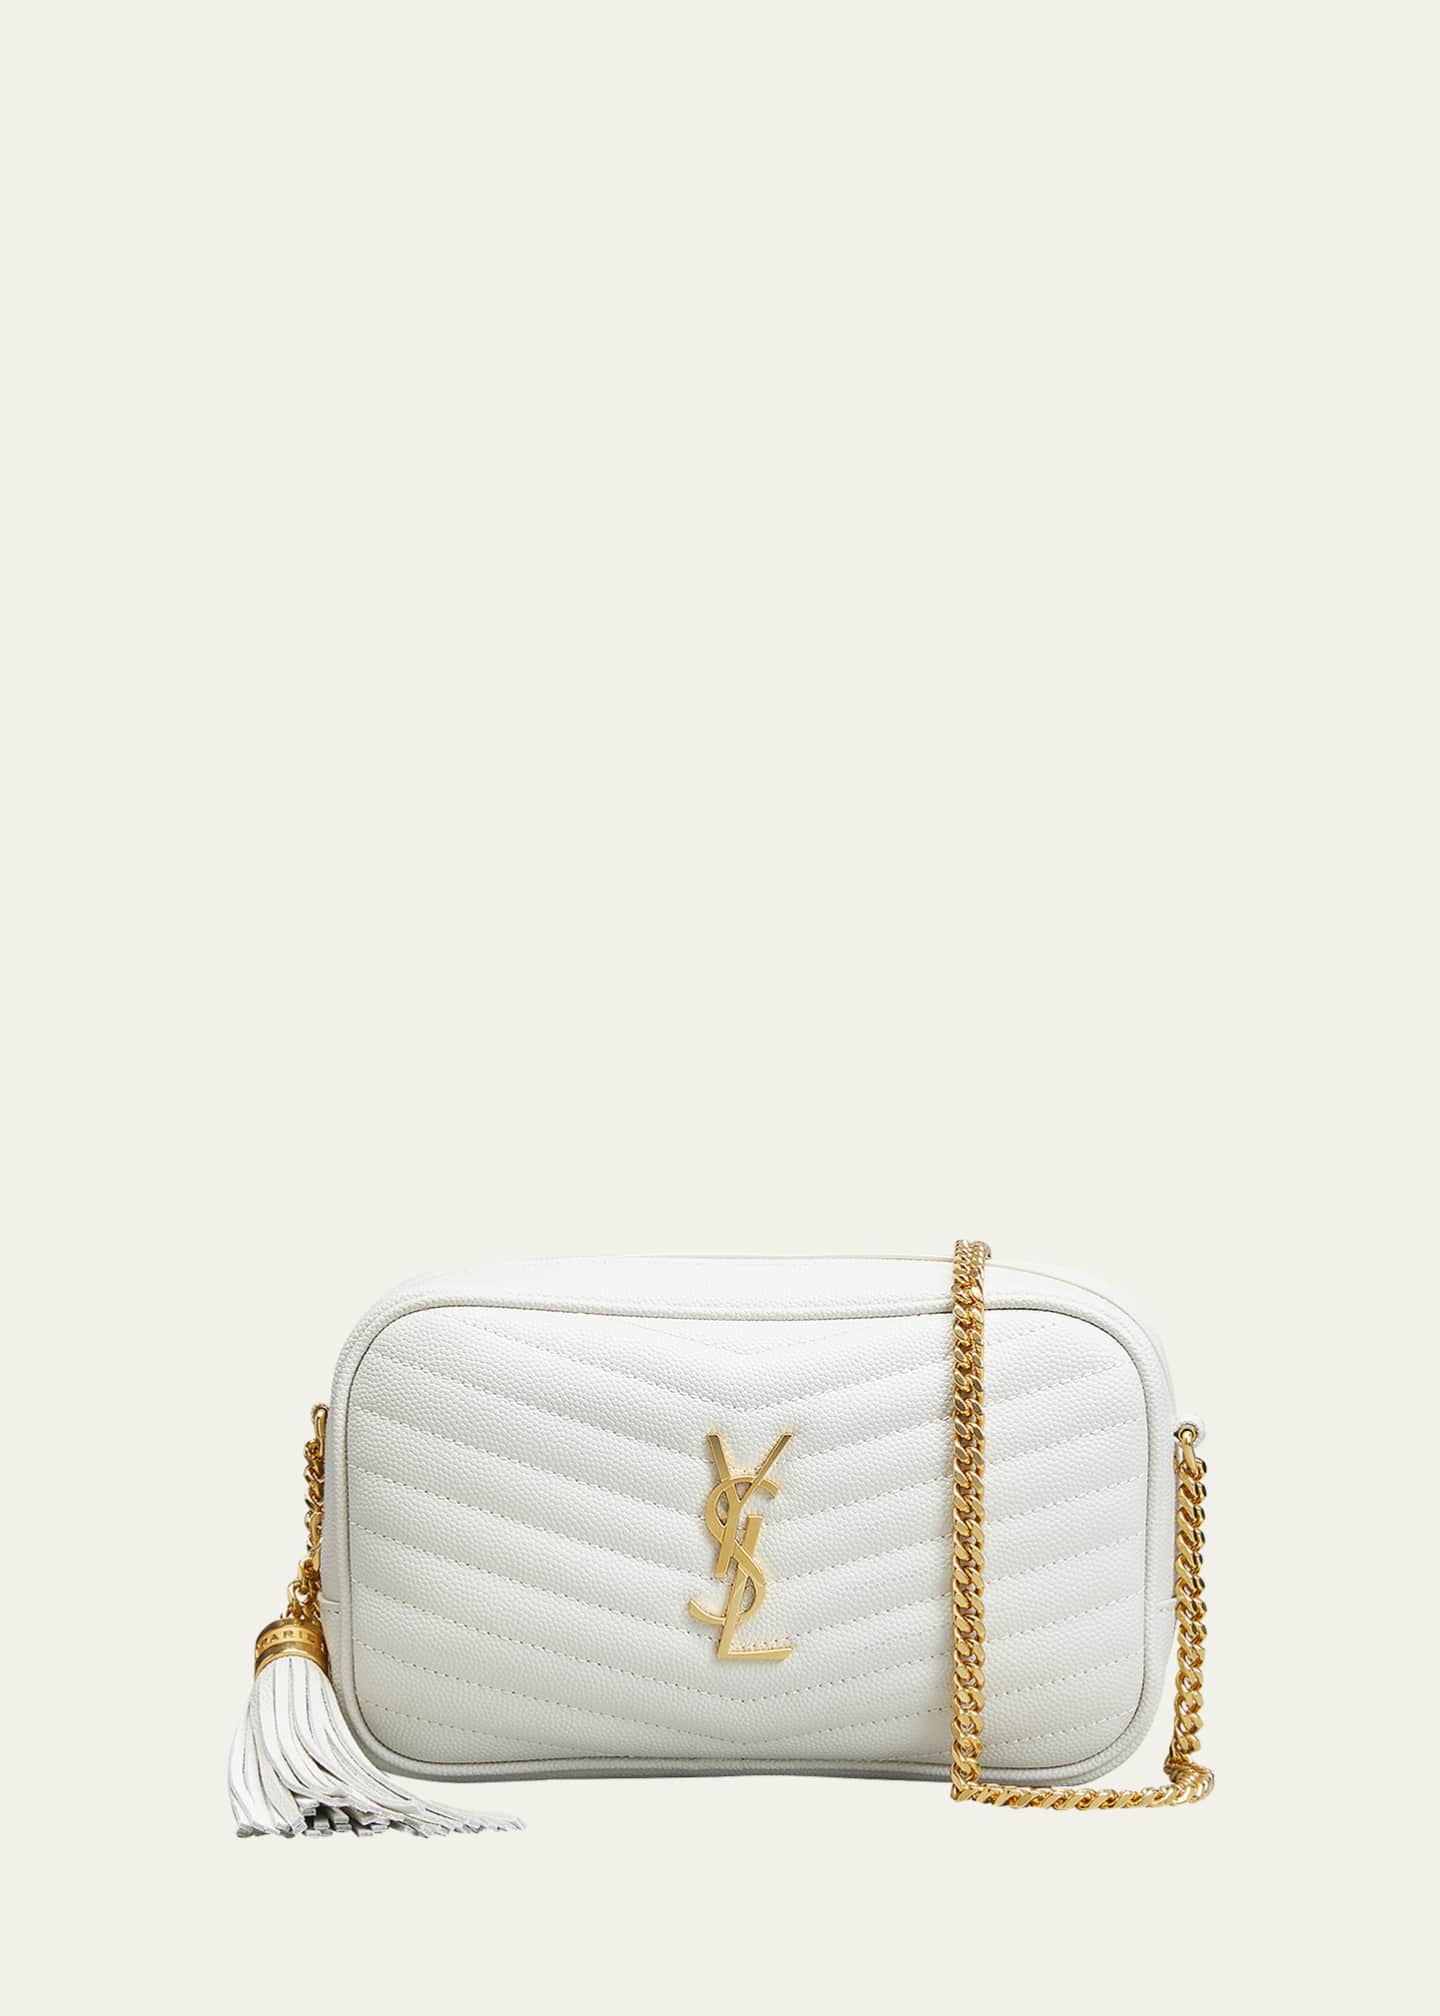 Lou Handbag Collection for Women, Saint Laurent